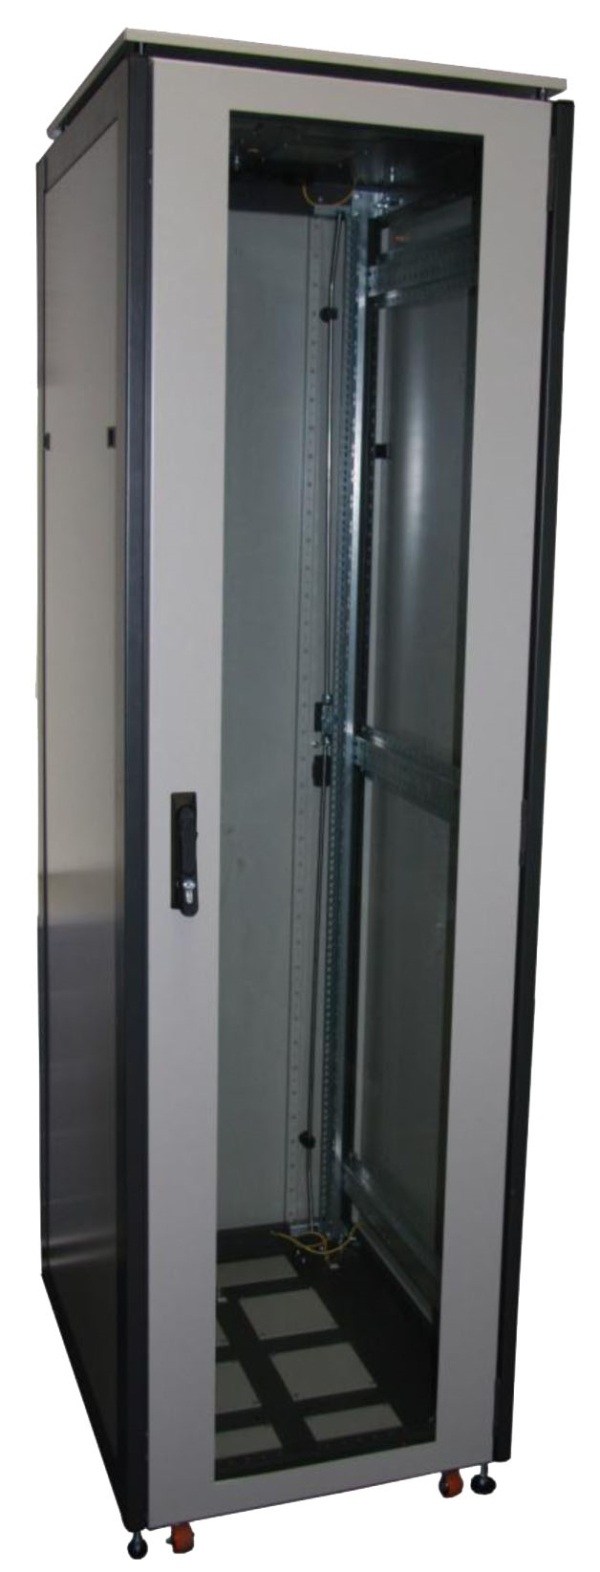 ССКТБ ТОМАСС ШТК-8818Э-00 - шкаф телекоммуникационный 19", 37U, 800х800х1800 мм, с металлической и стеклянной дверью